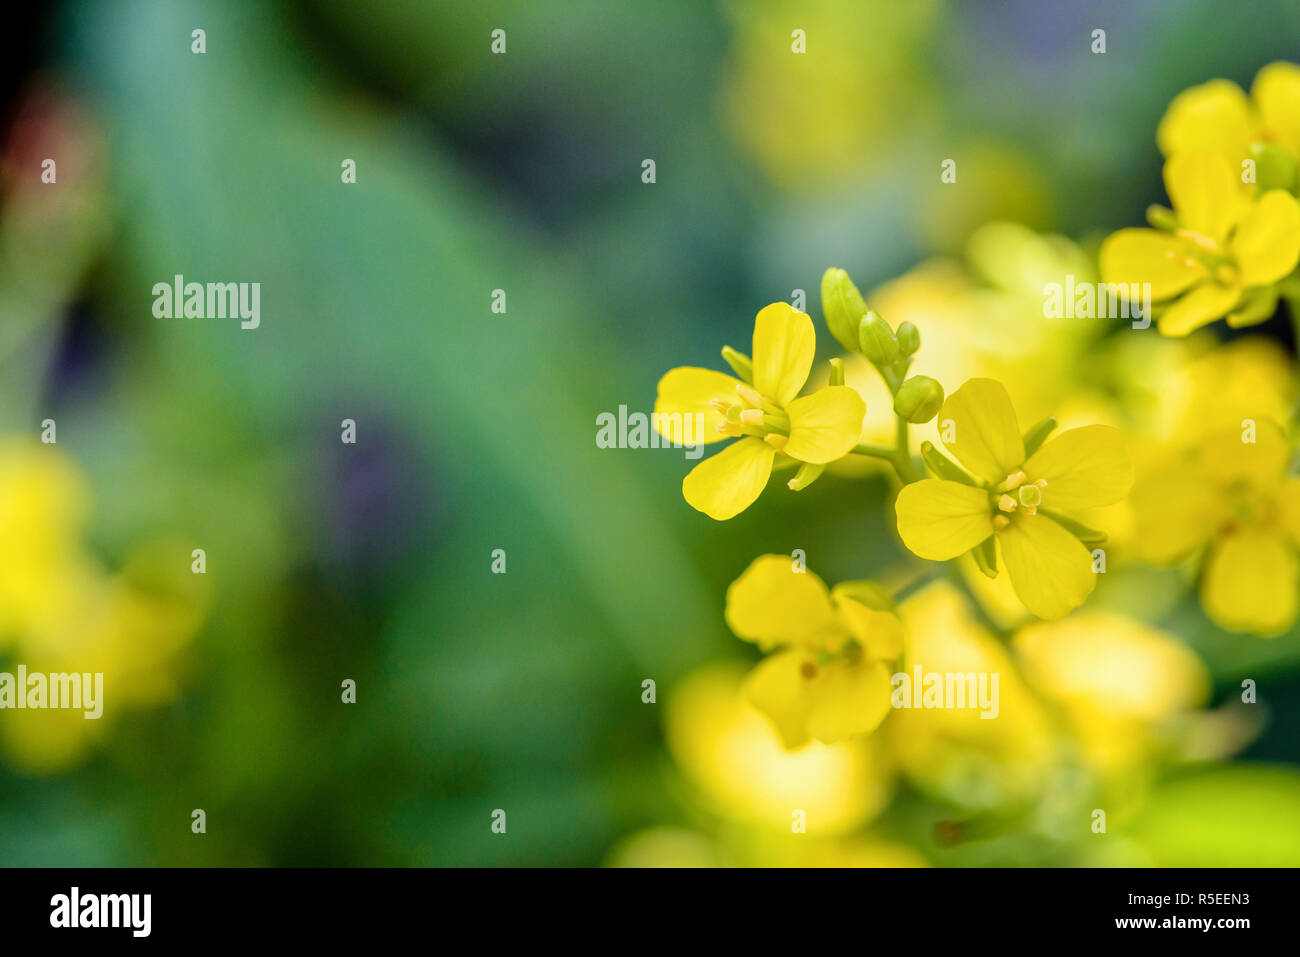 Yellow flower of Wild Mustard Stock Photo